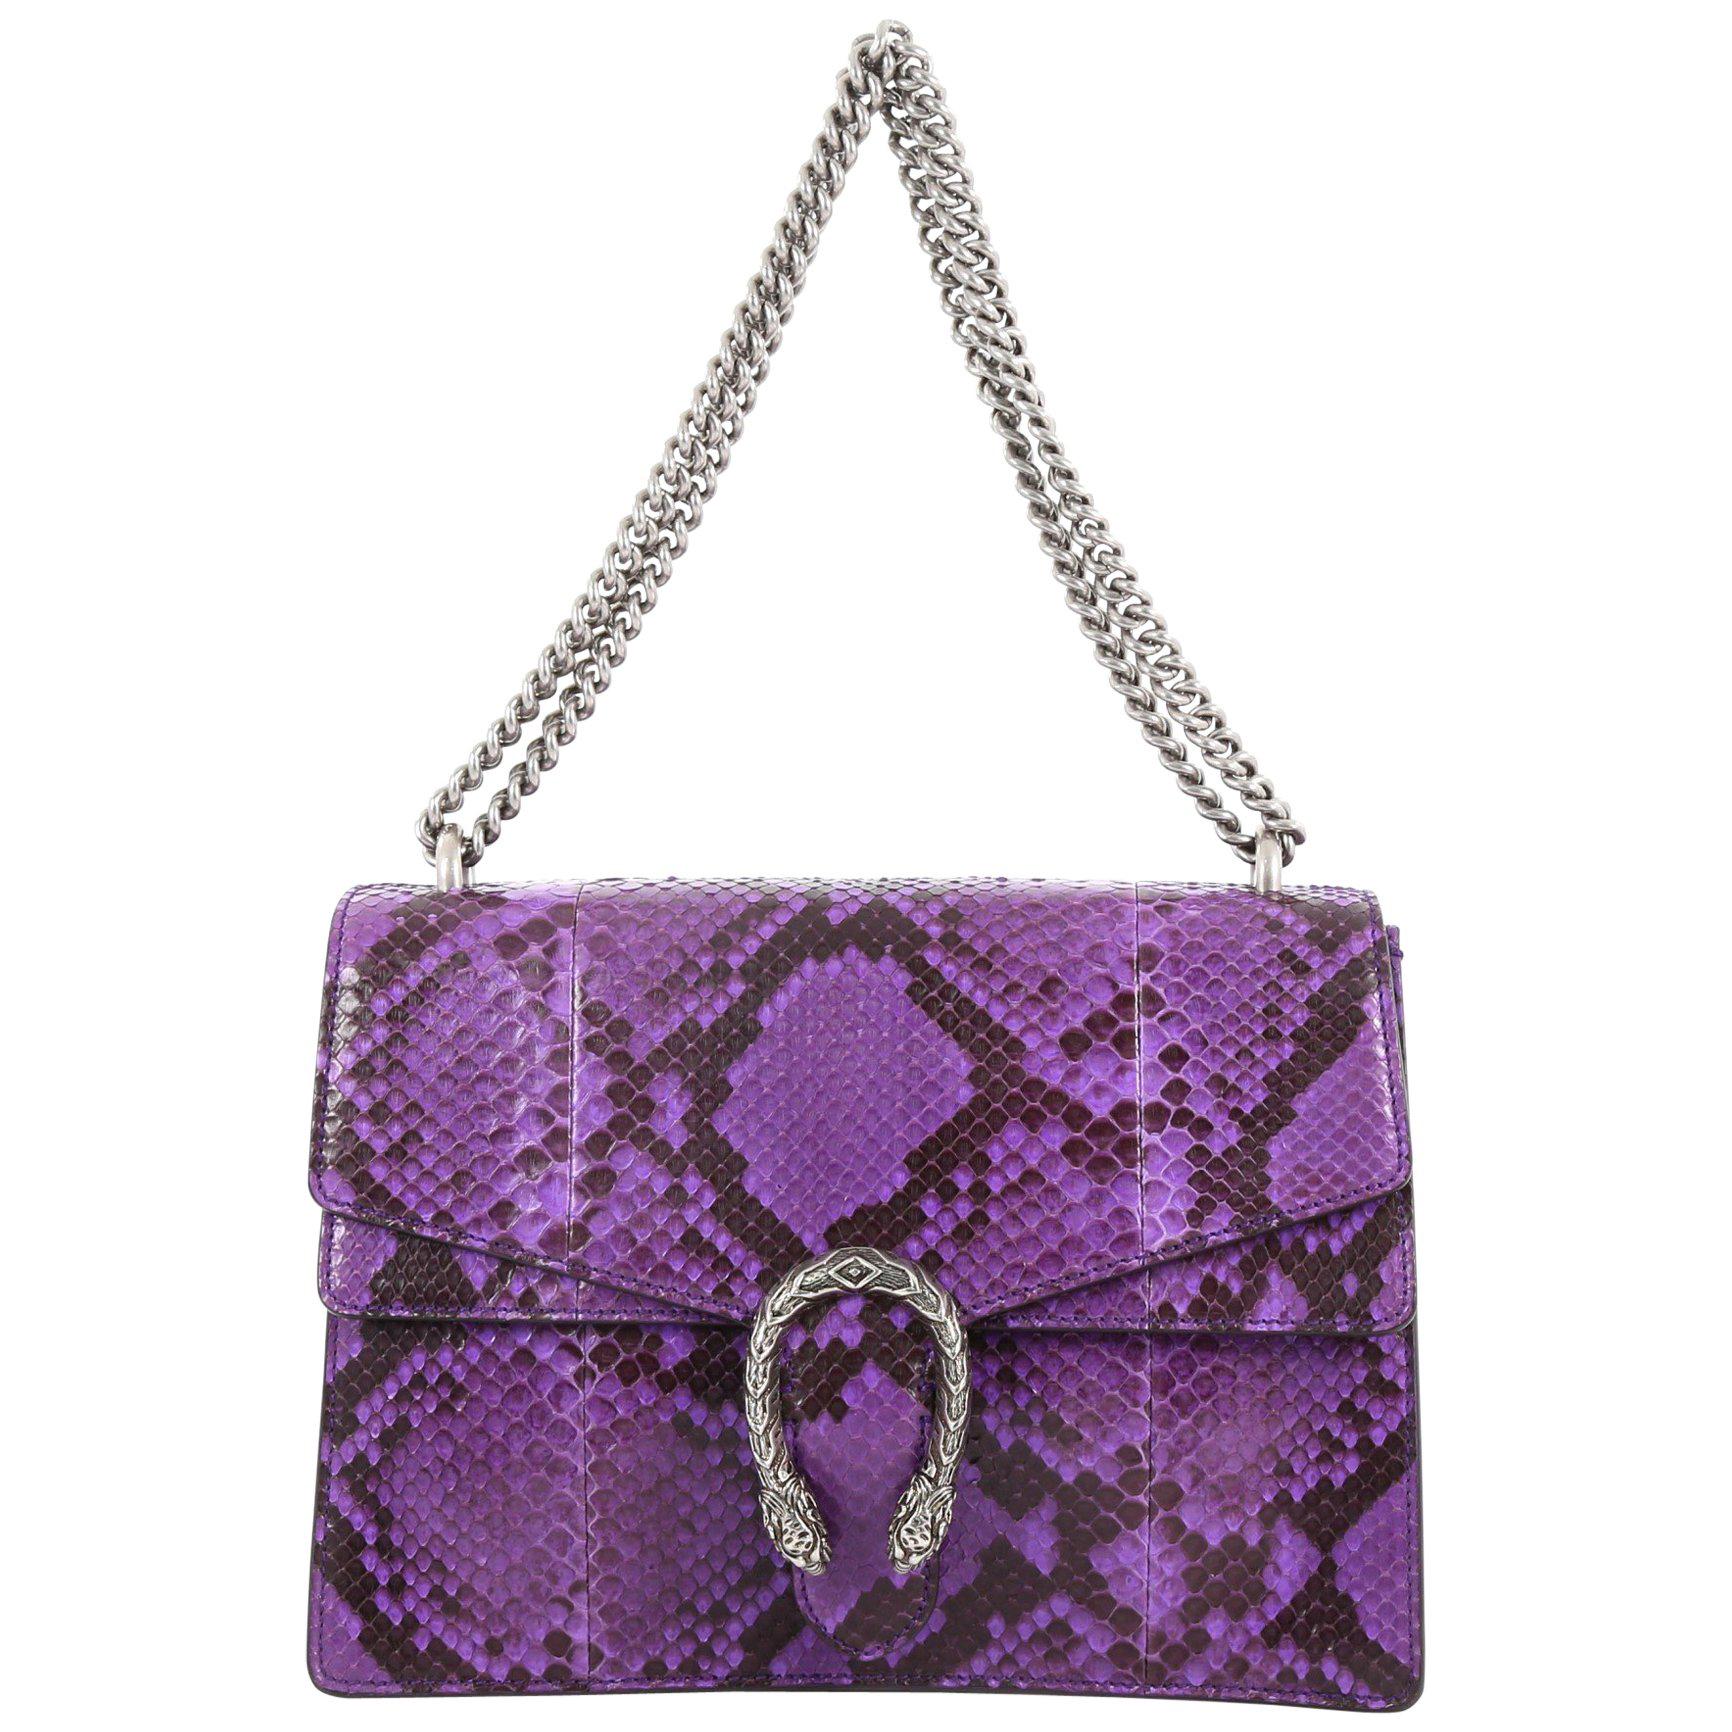 Gucci Dionysus Handbag Python Medium